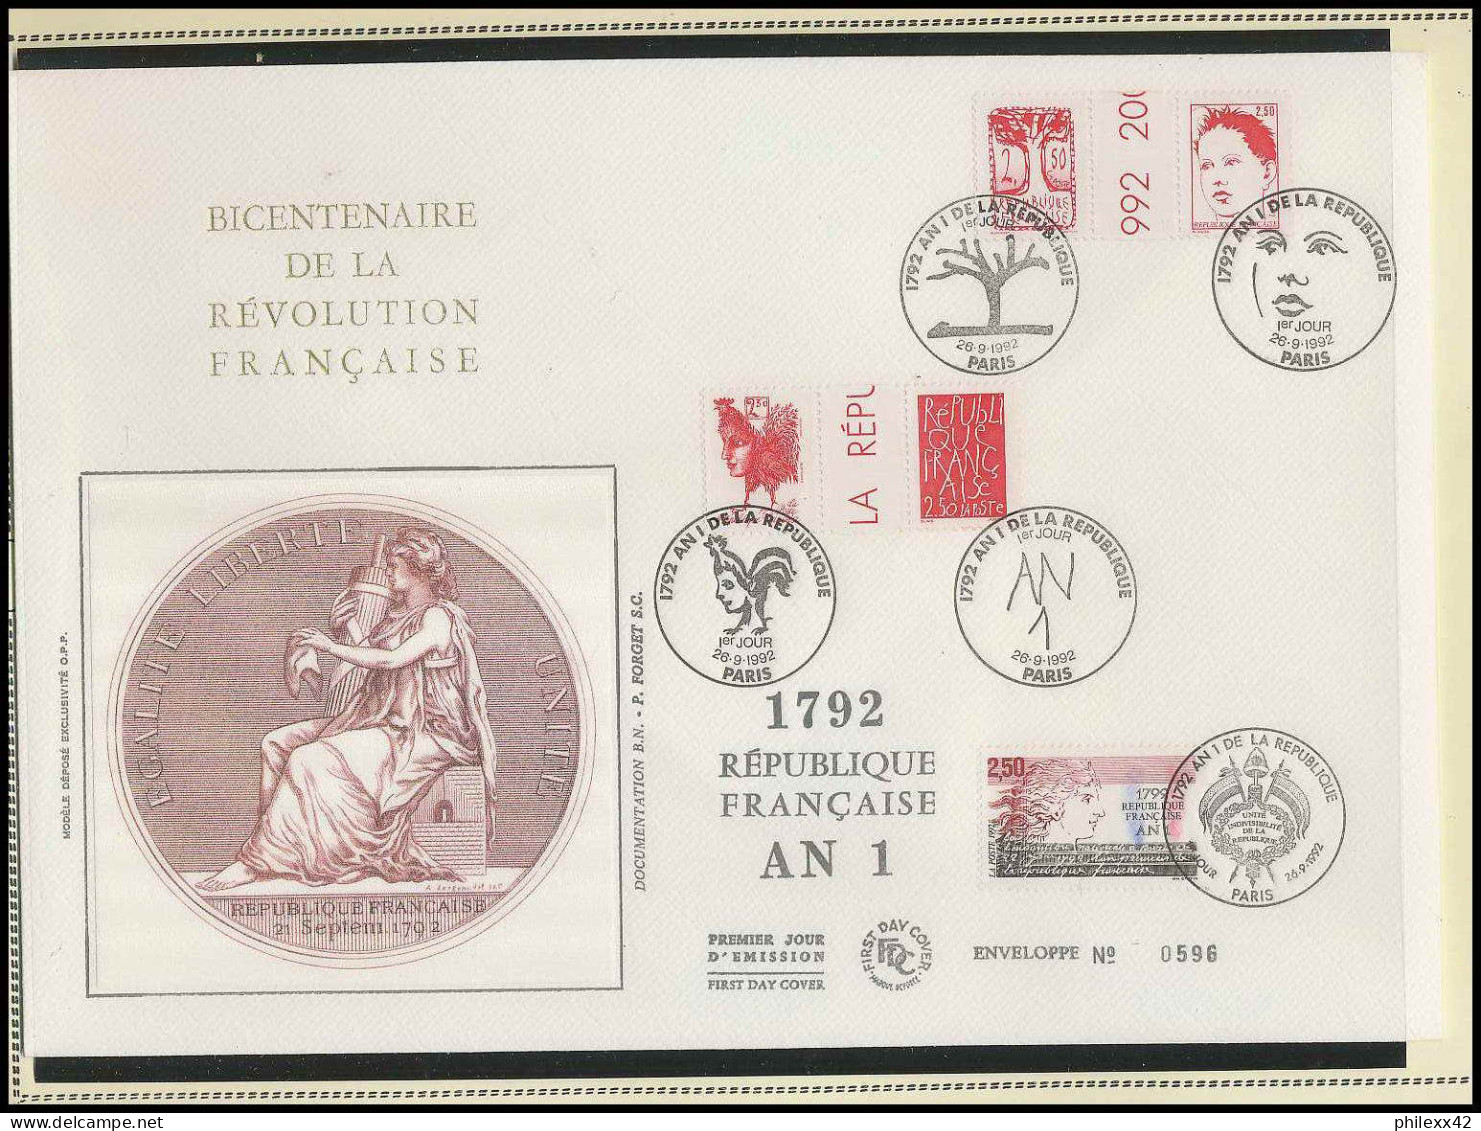 261 France bicentenaire révolution francaise lot N° 2772/2775 LETTRES DOCUMENTS fdc max